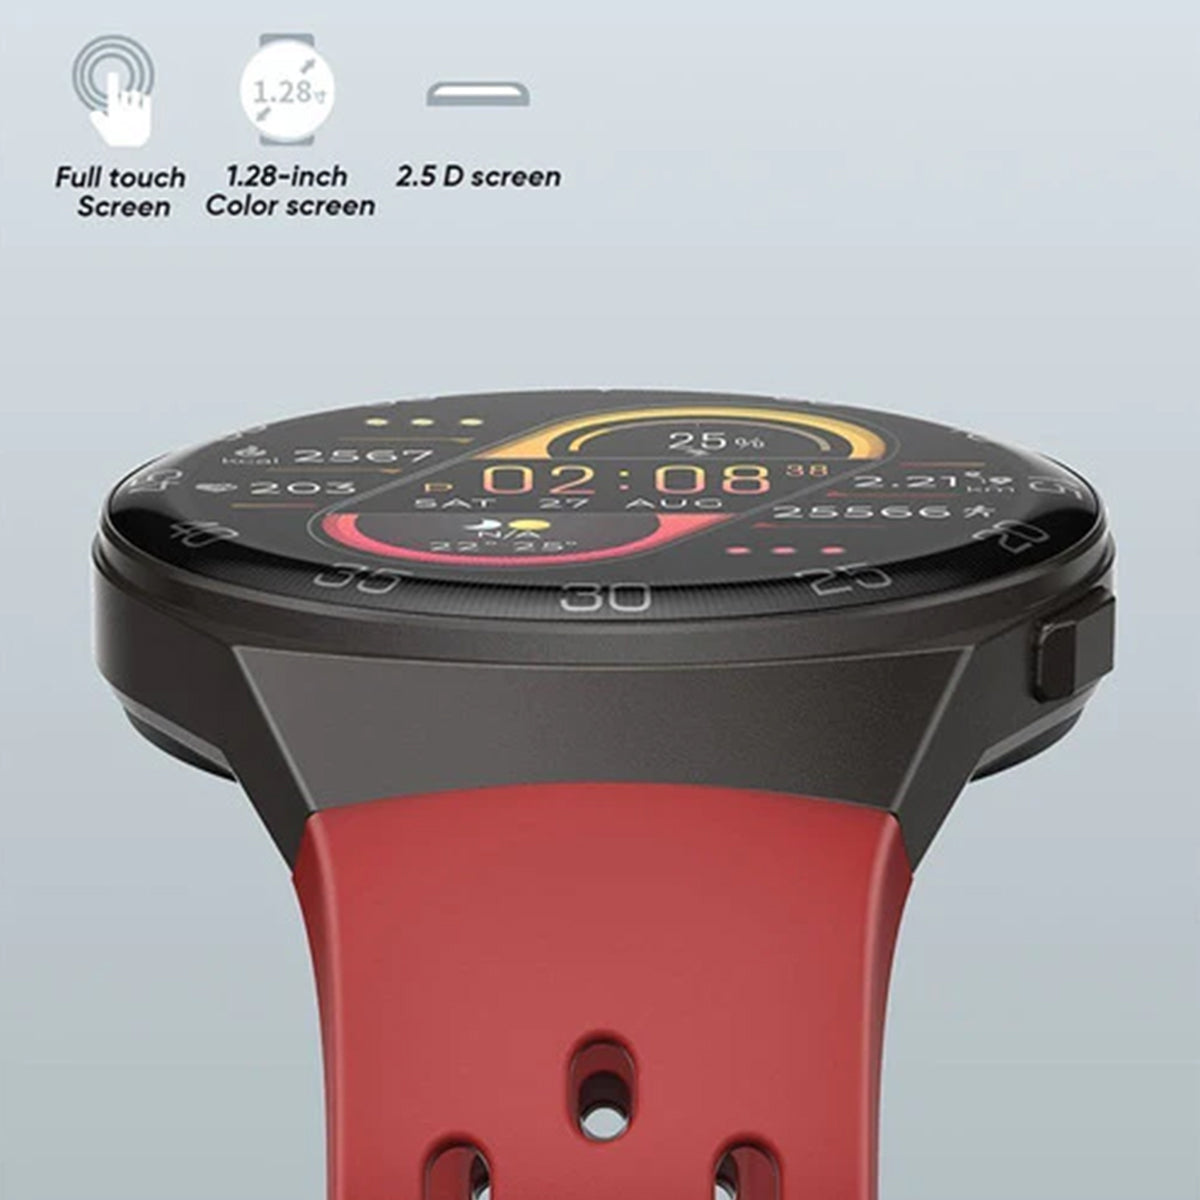 Smartwatch Reloj Inteligente Fralugio Bw0272 De Lujo Touch